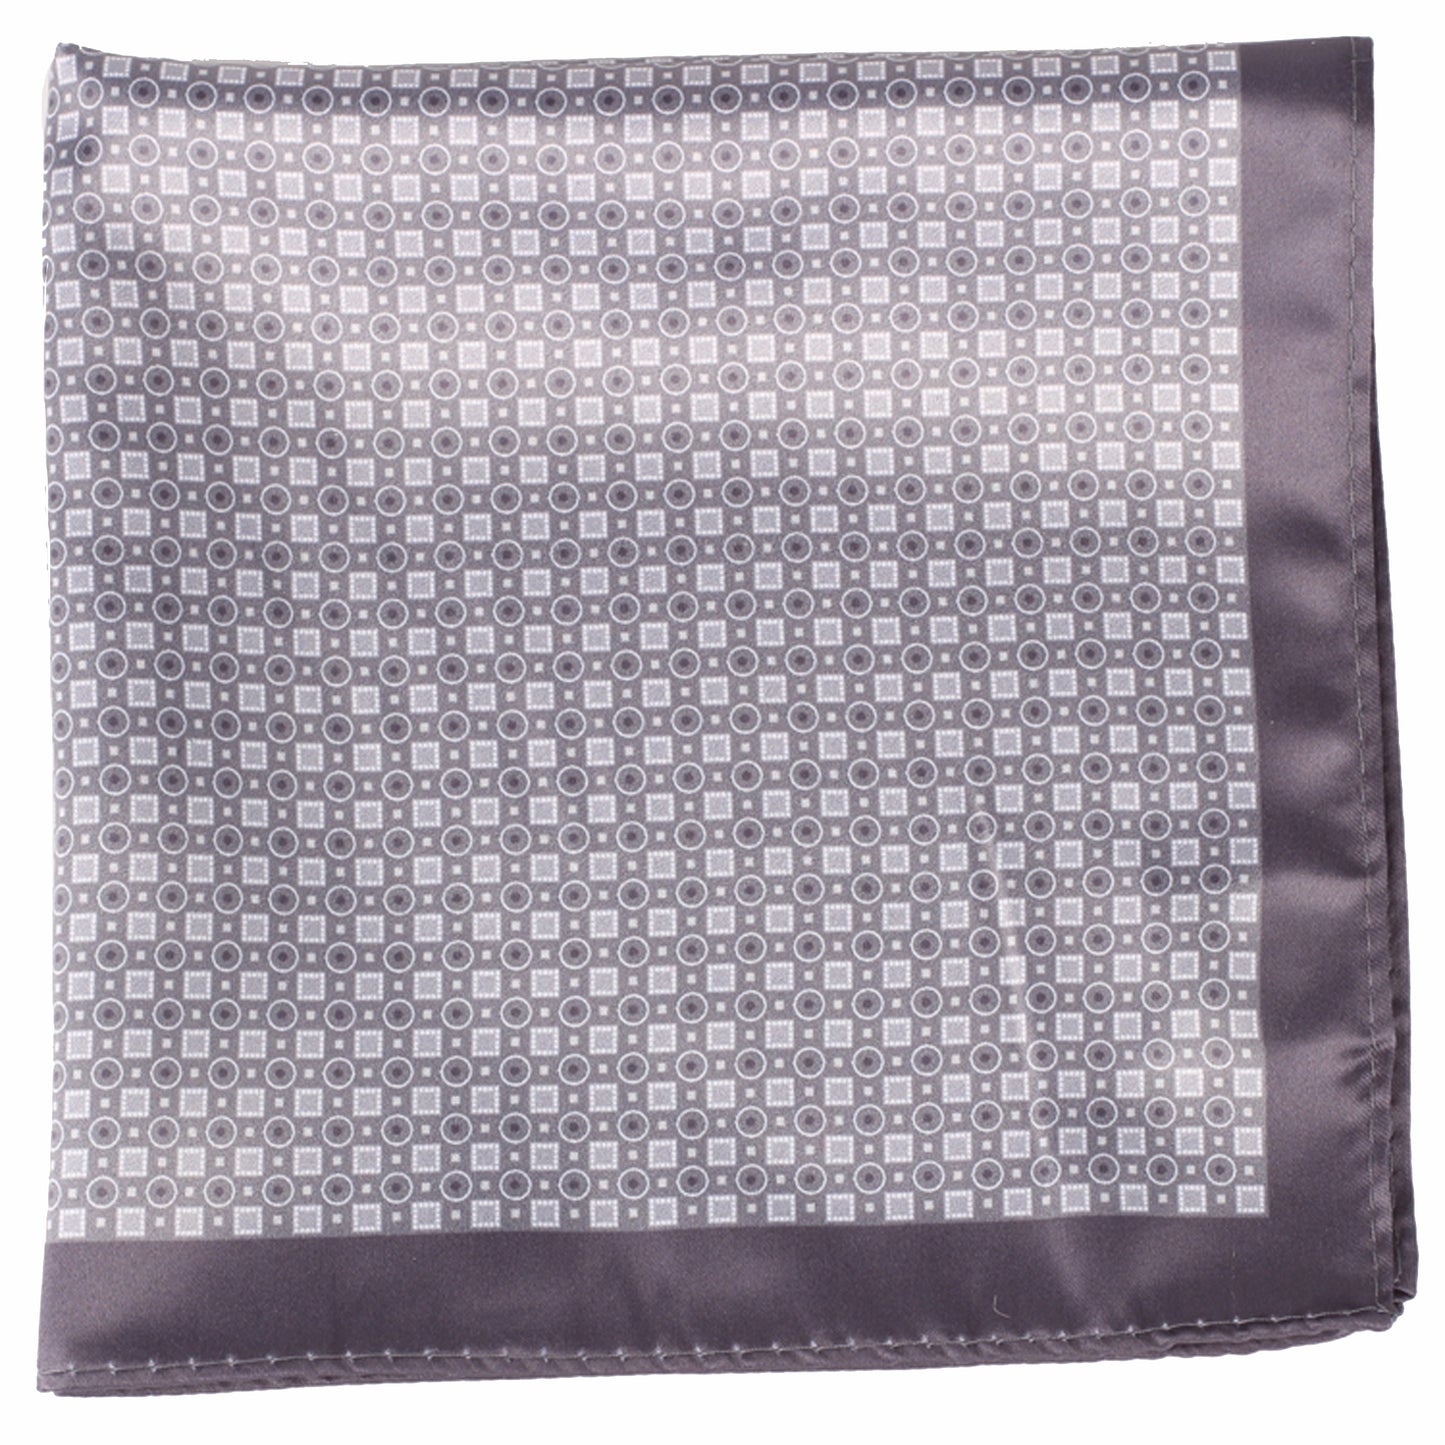 Charcoal Geometric Pocket Square + SquareGuard